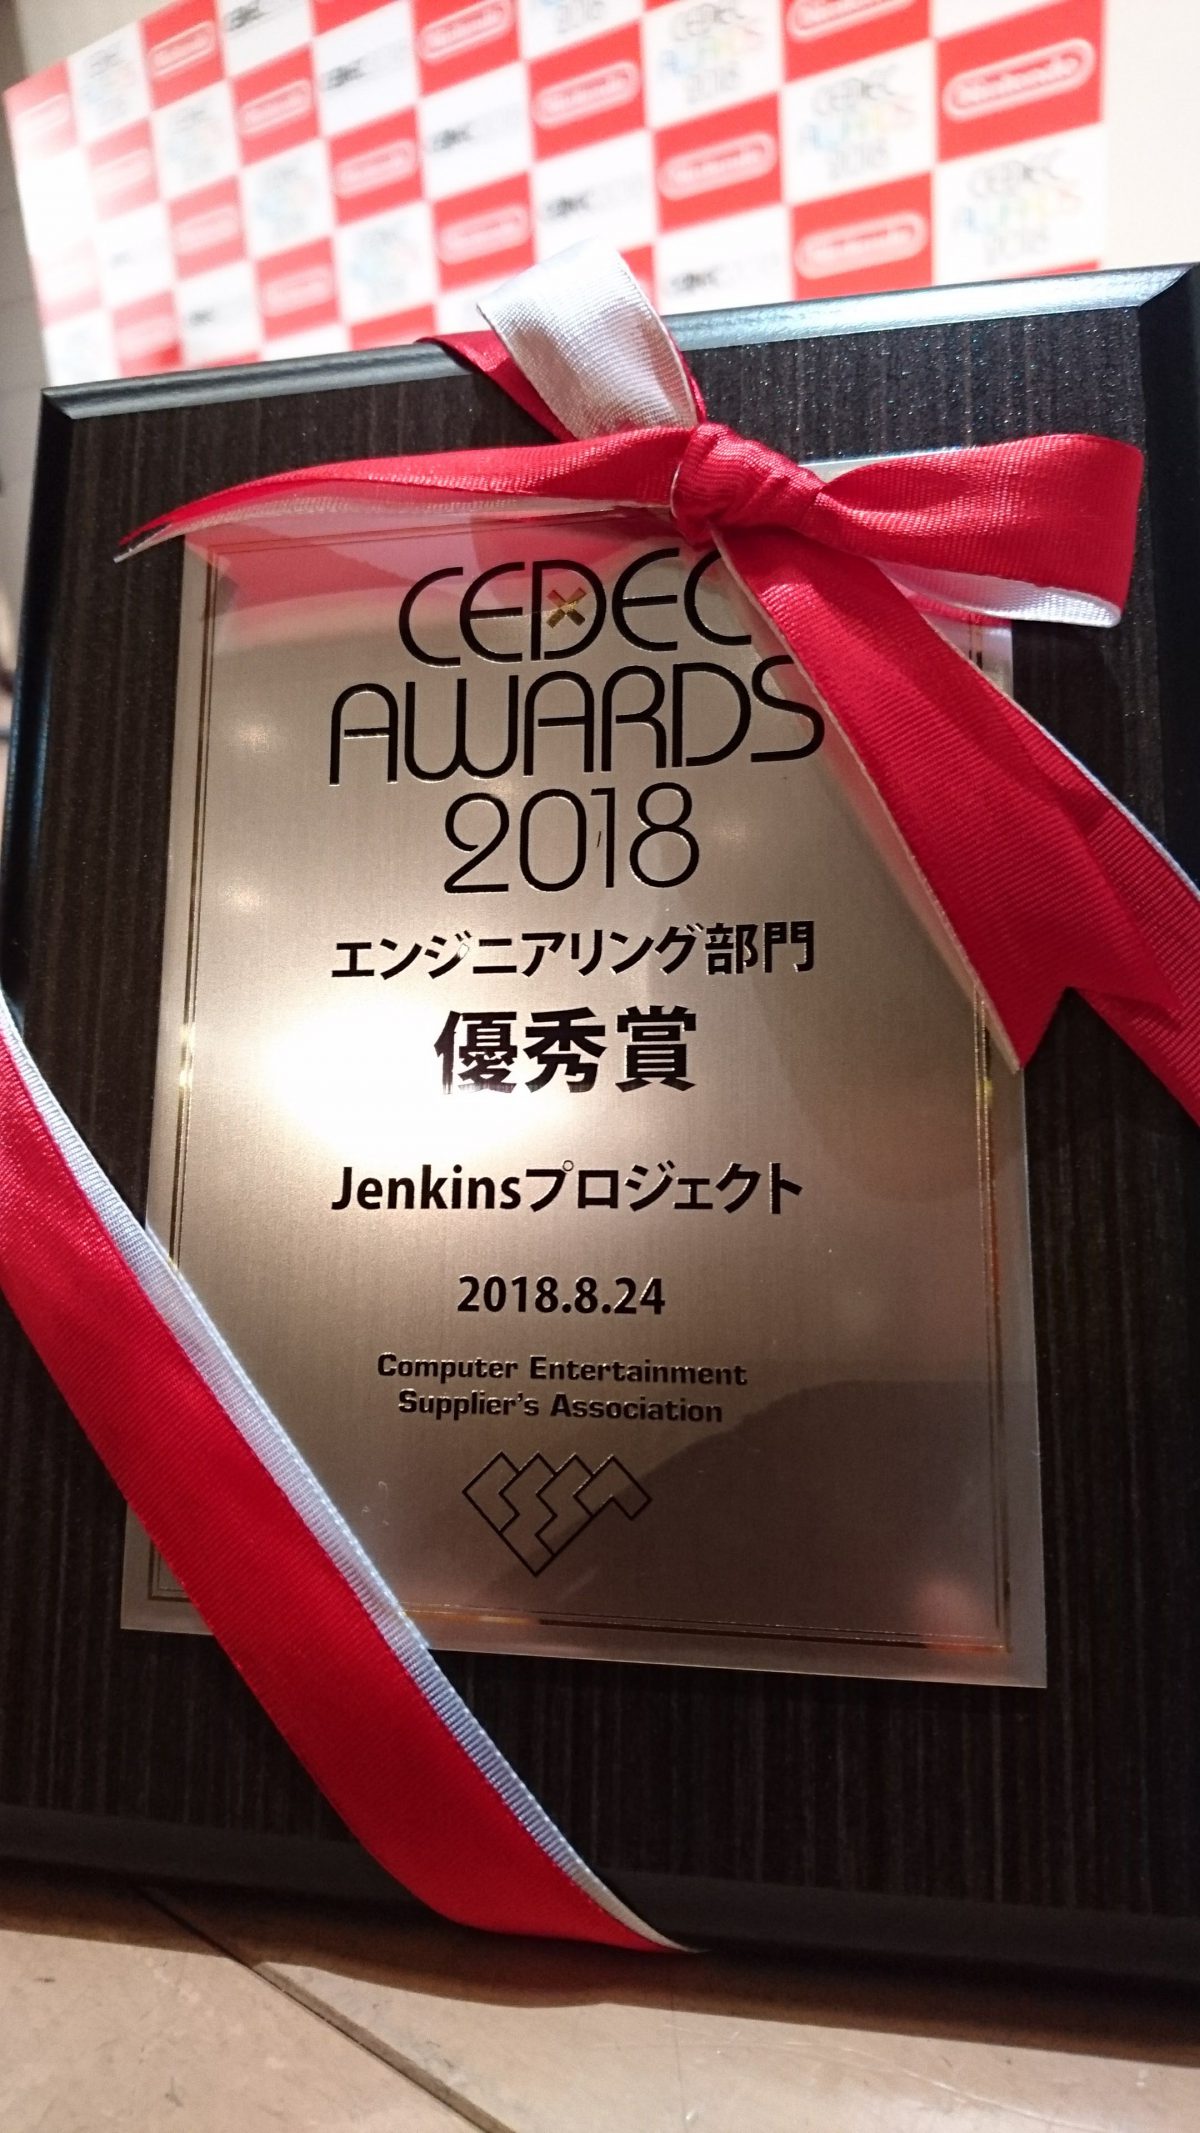 CEDEC AWARDS エンジニアリング部門の優秀賞を受賞しました #CEDEC2018